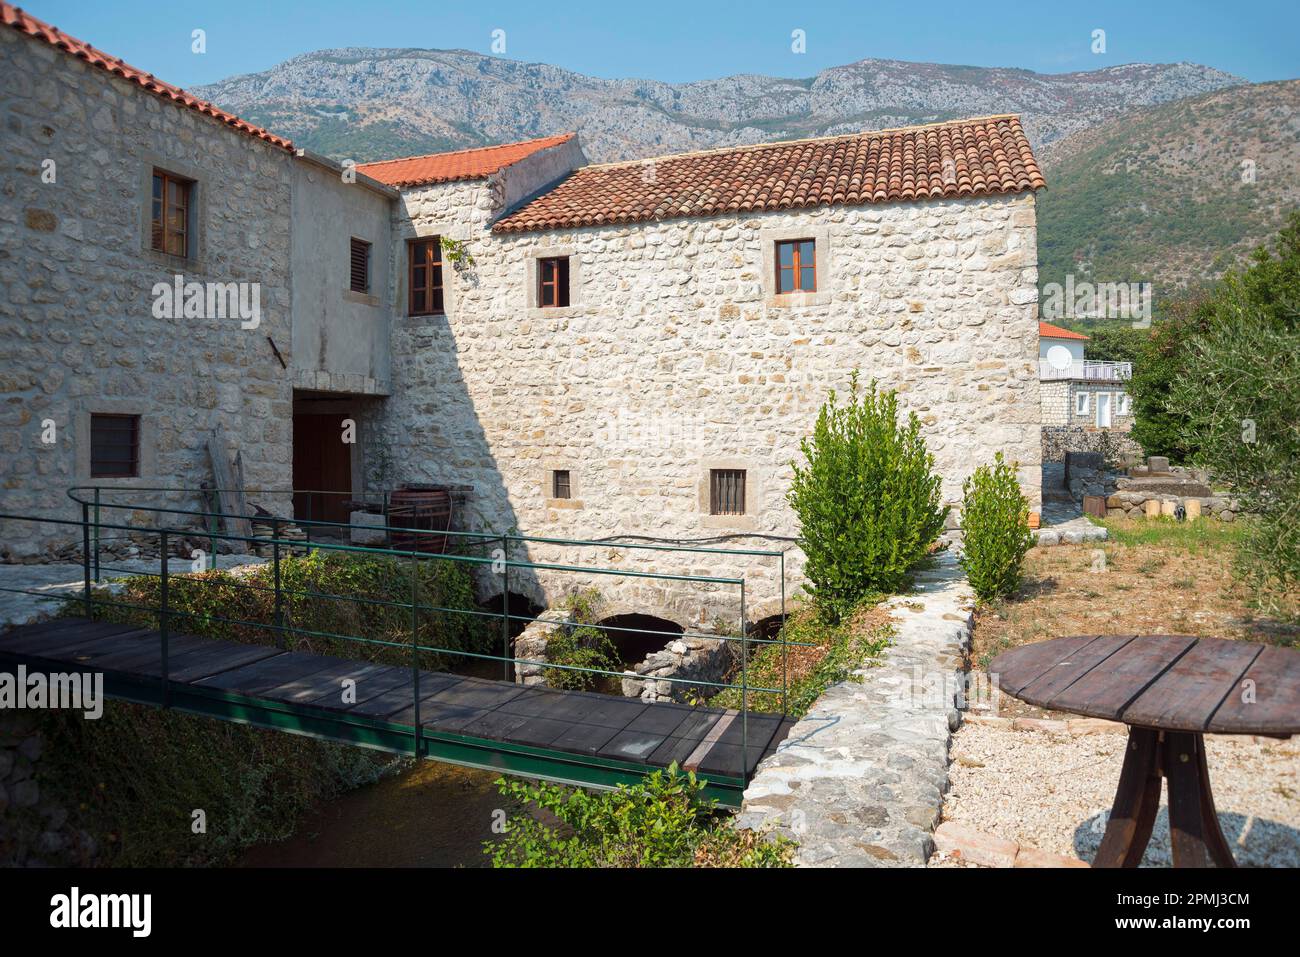 Ljuta River in Konavle, Dubrovnik region, Croatia Stock Photo - Alamy